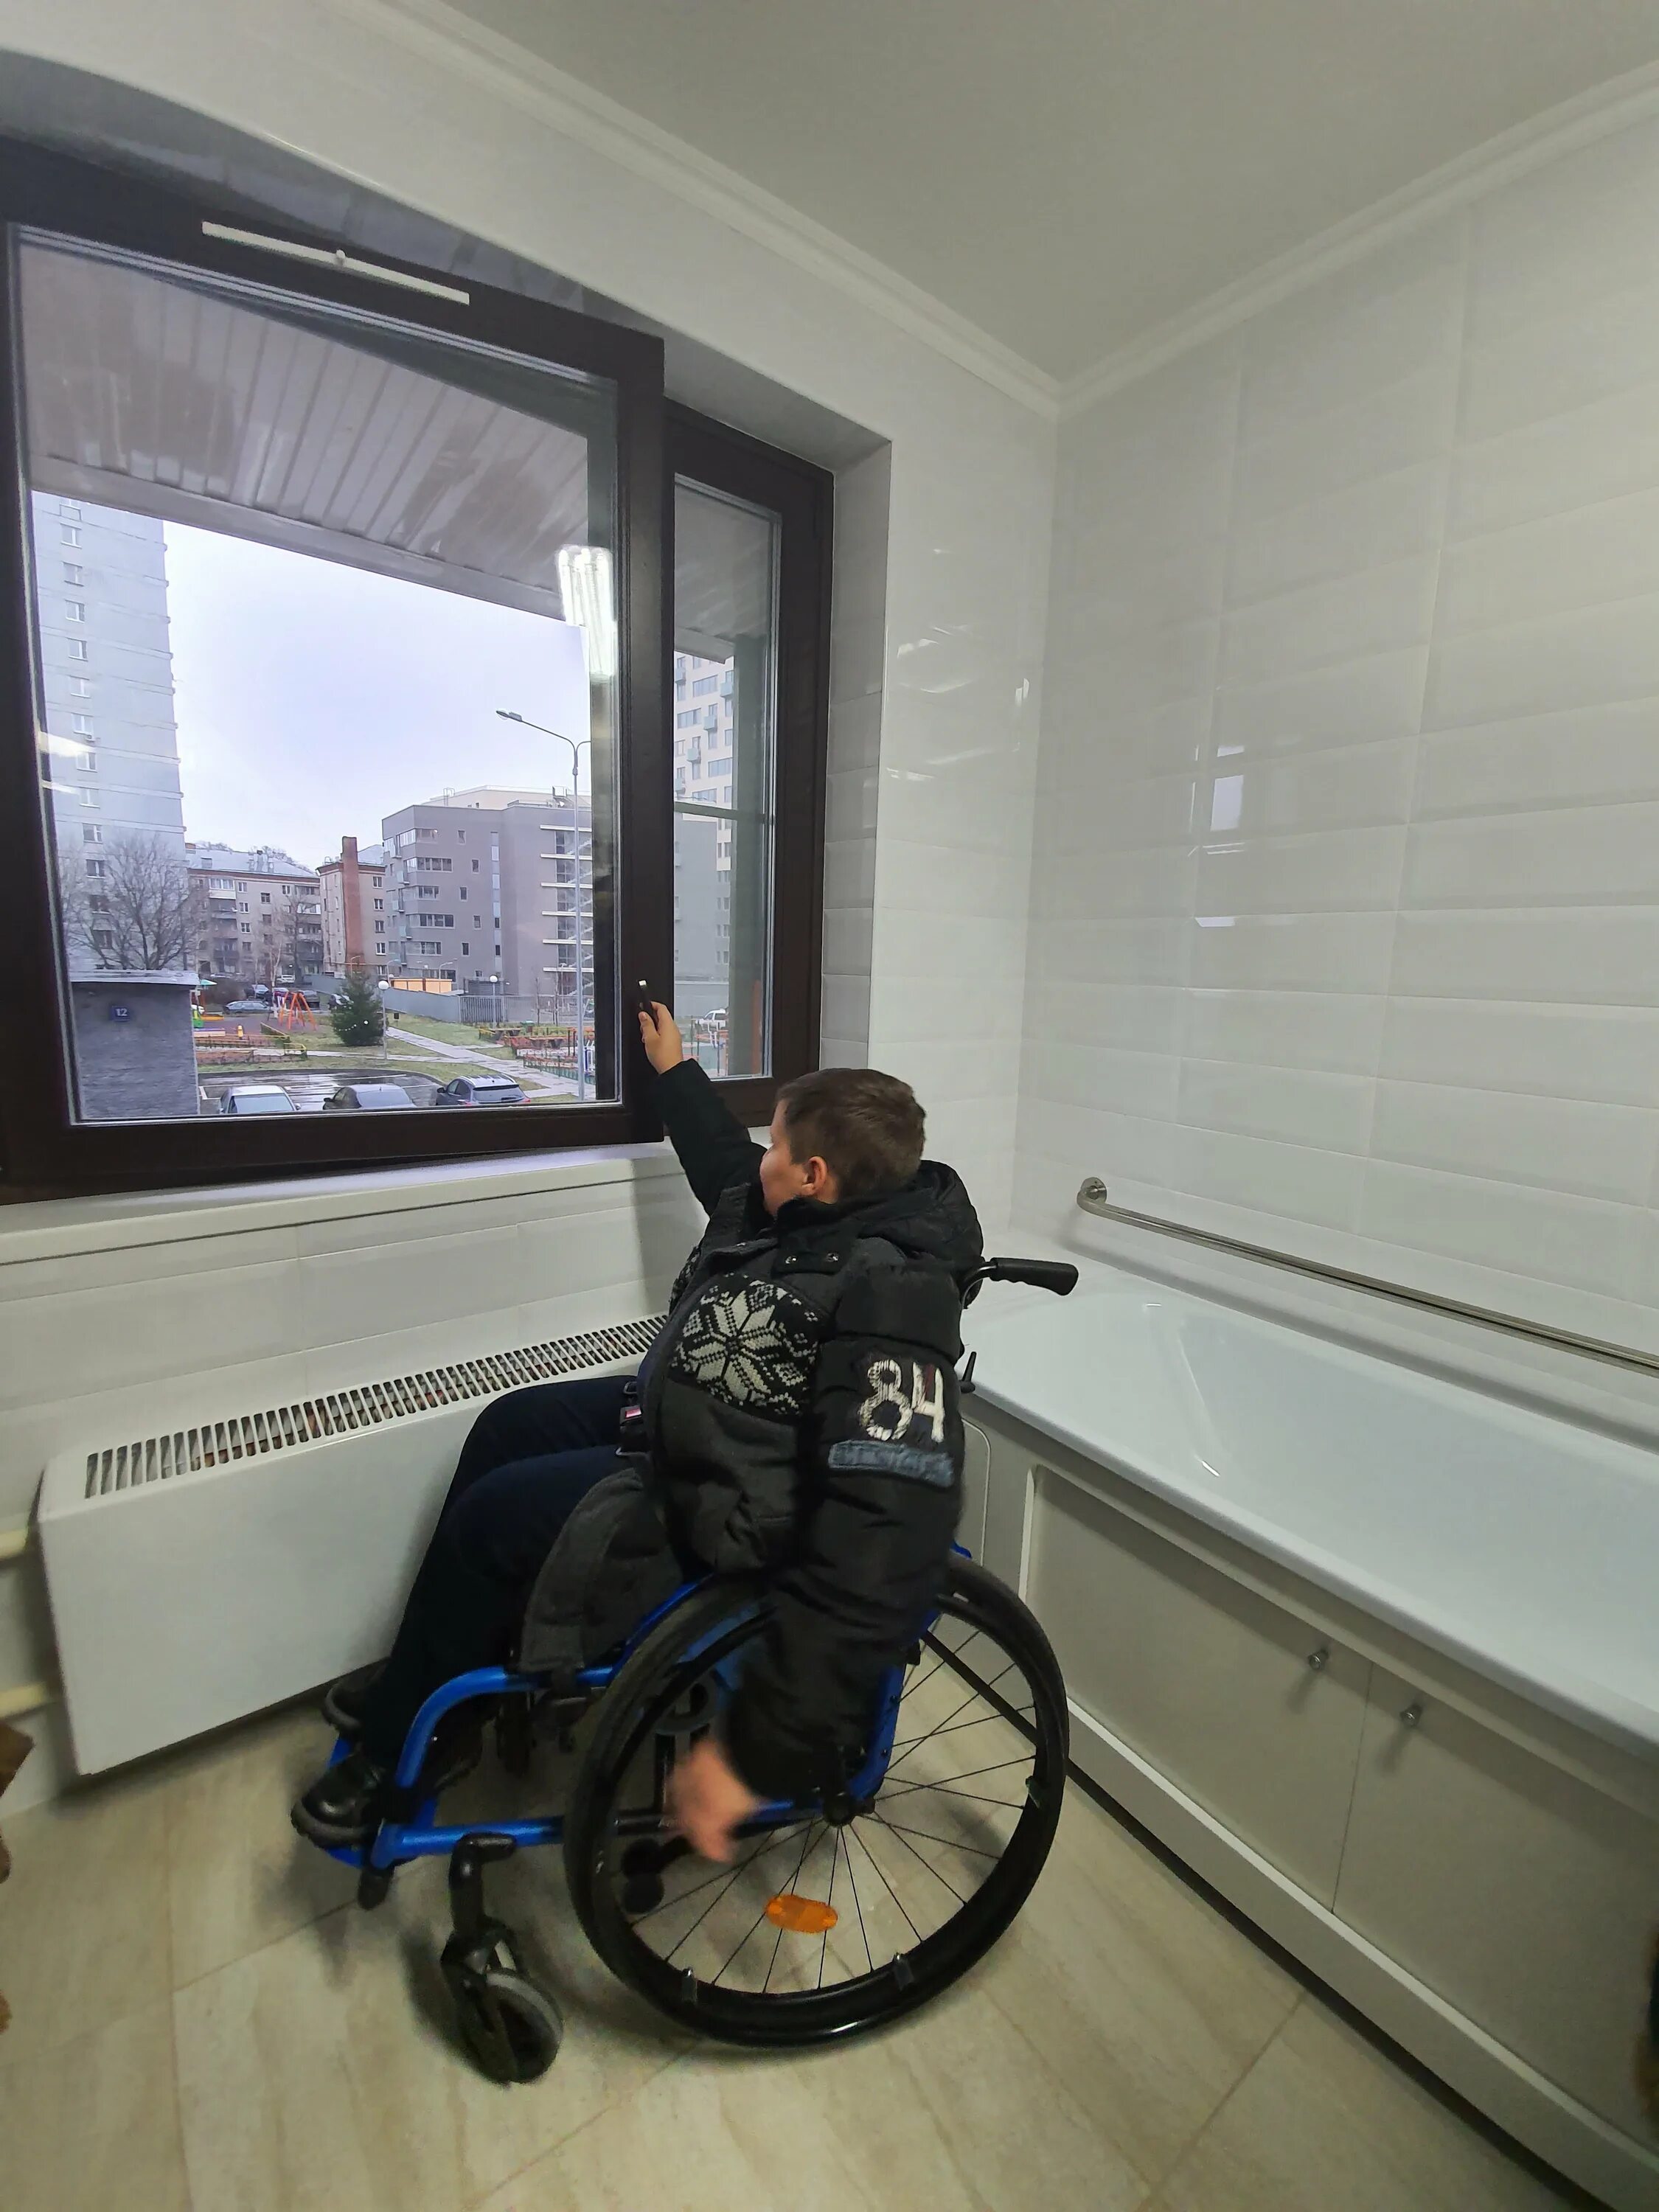 Квартира для инвалида. Квартиры приспособленные для инвалидов. Жильё для инвалидов колясочников. Домик для инвалидов колясочников. Жилье для инвалидов 1 группы